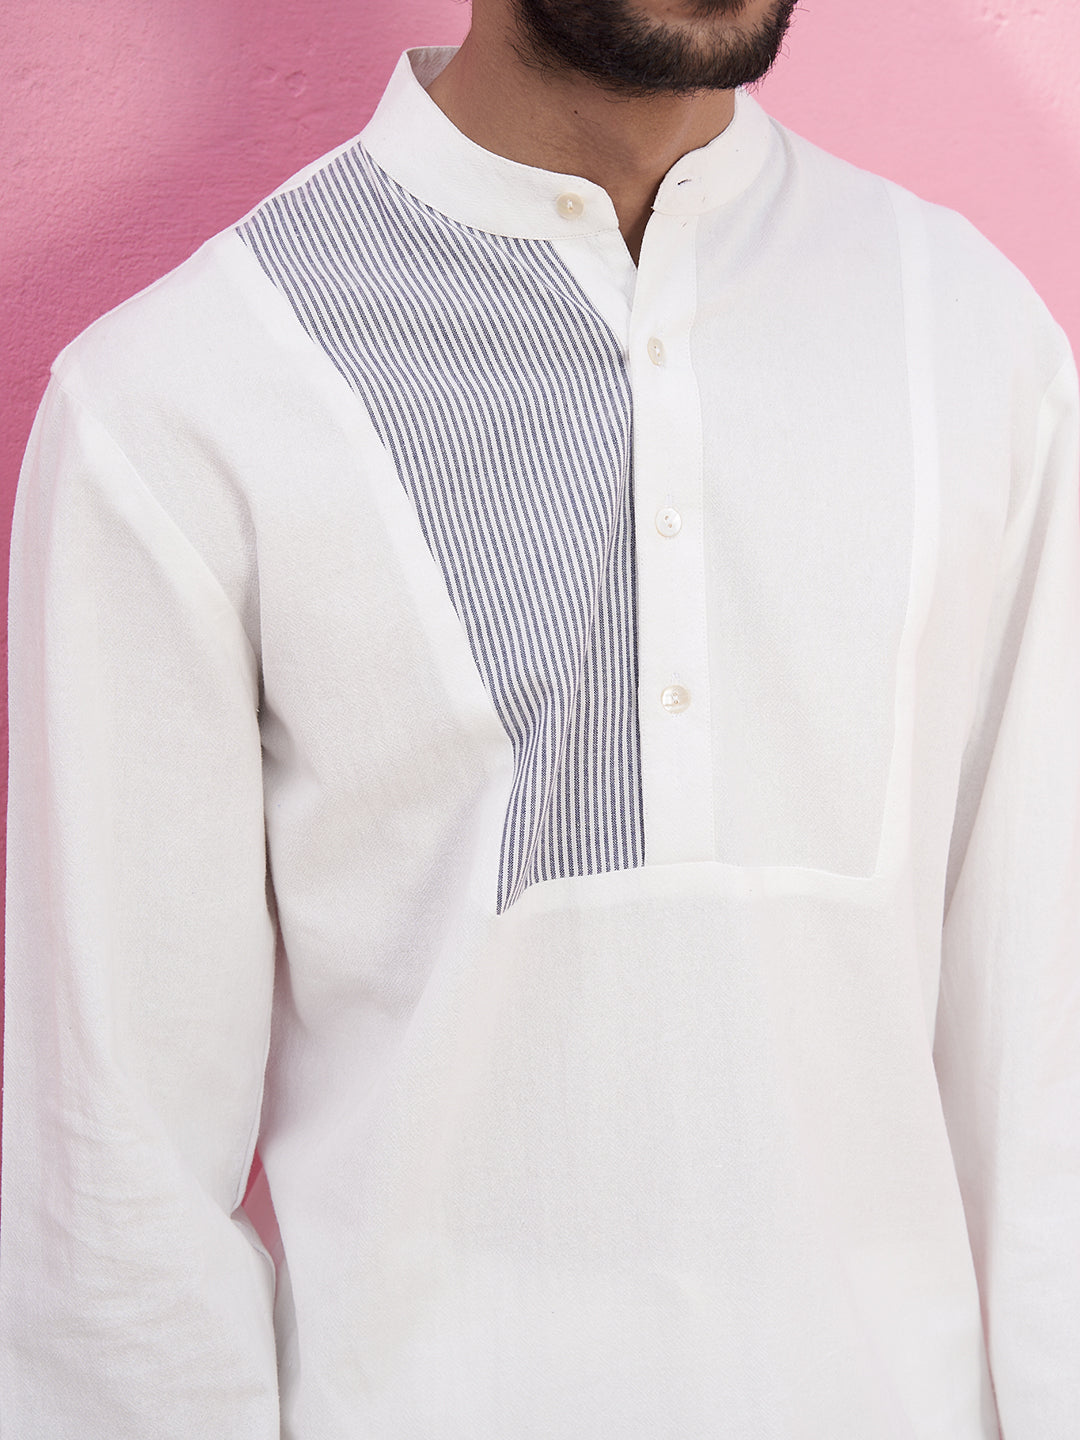 White shirt kurta with neck yoke with white panelled pants